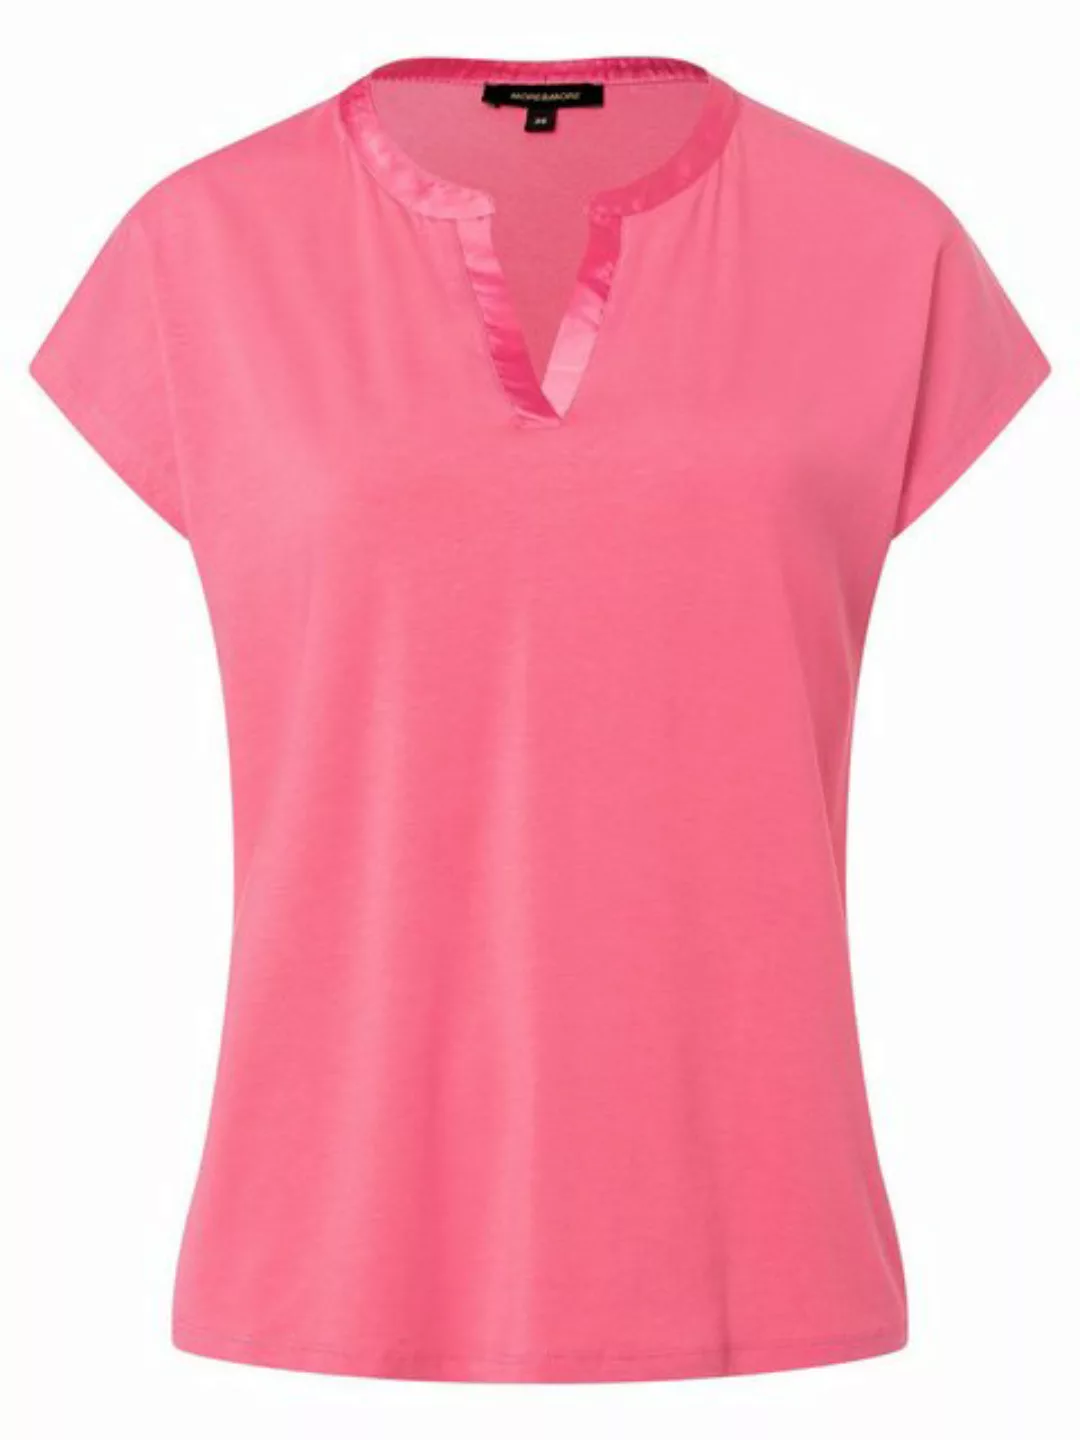 Shirt mit Satinkante, soft reed green, Sommer-Kollektion günstig online kaufen